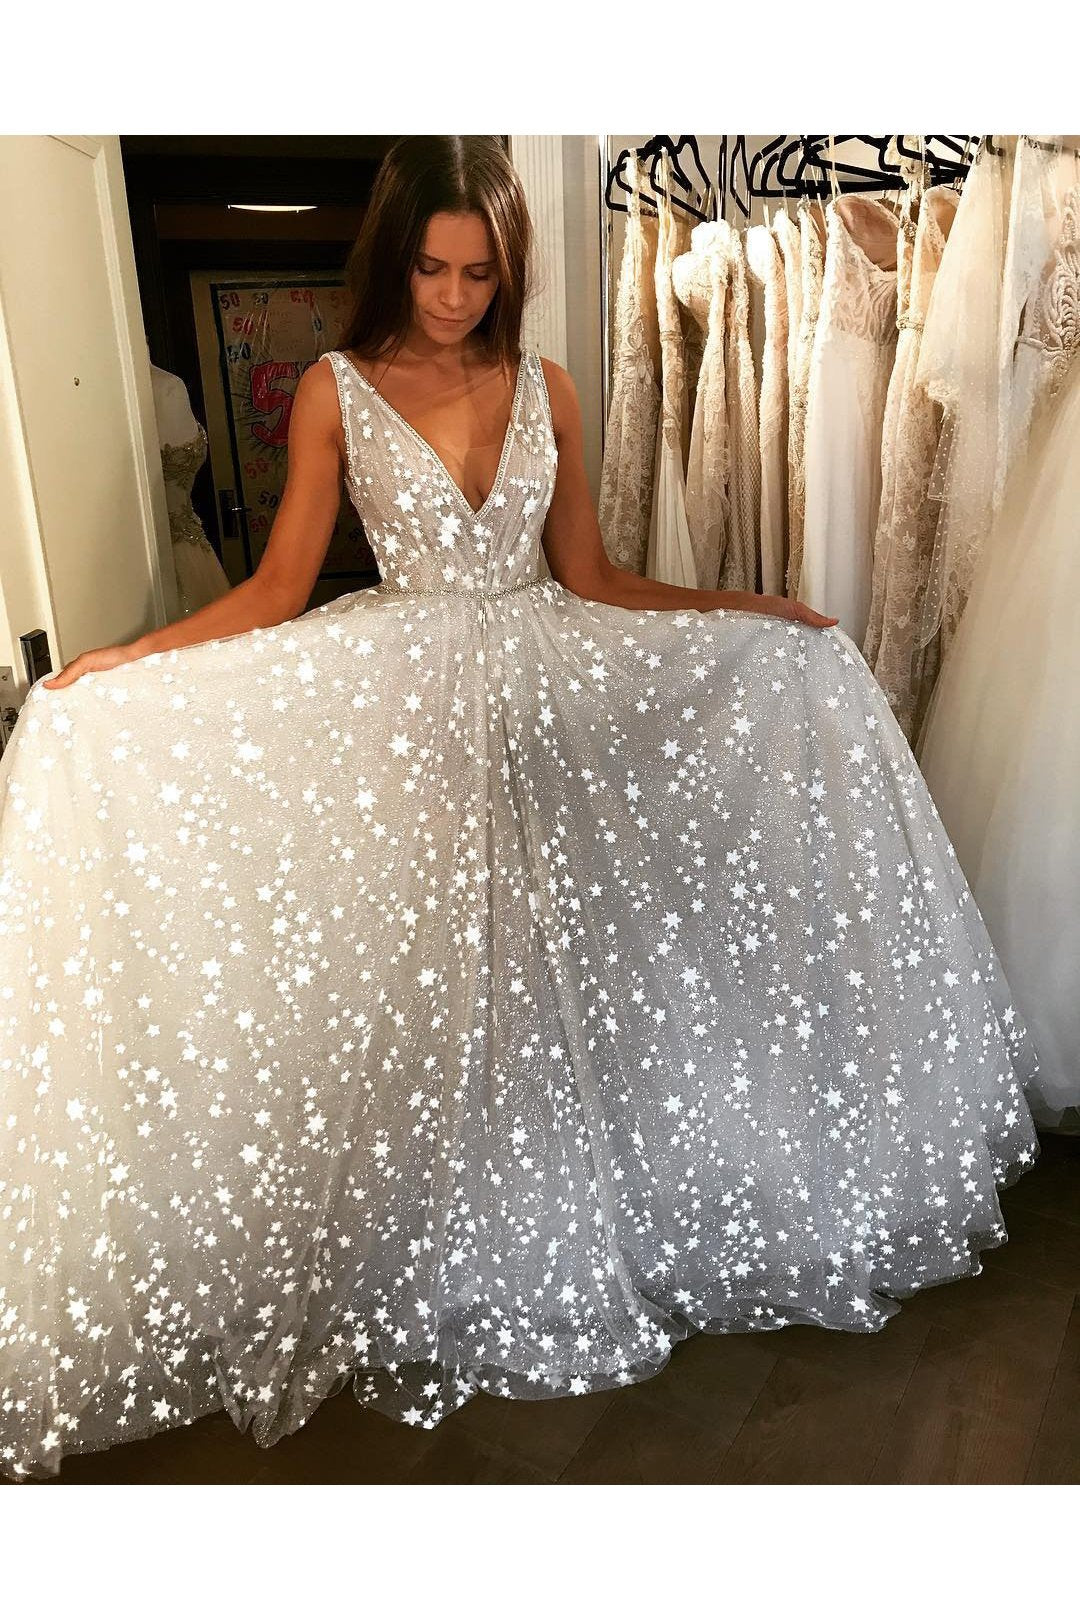 Glitter V Neck Sleeveless Floor Length Prom Dress, Sparkly Long Party Dresses N2596